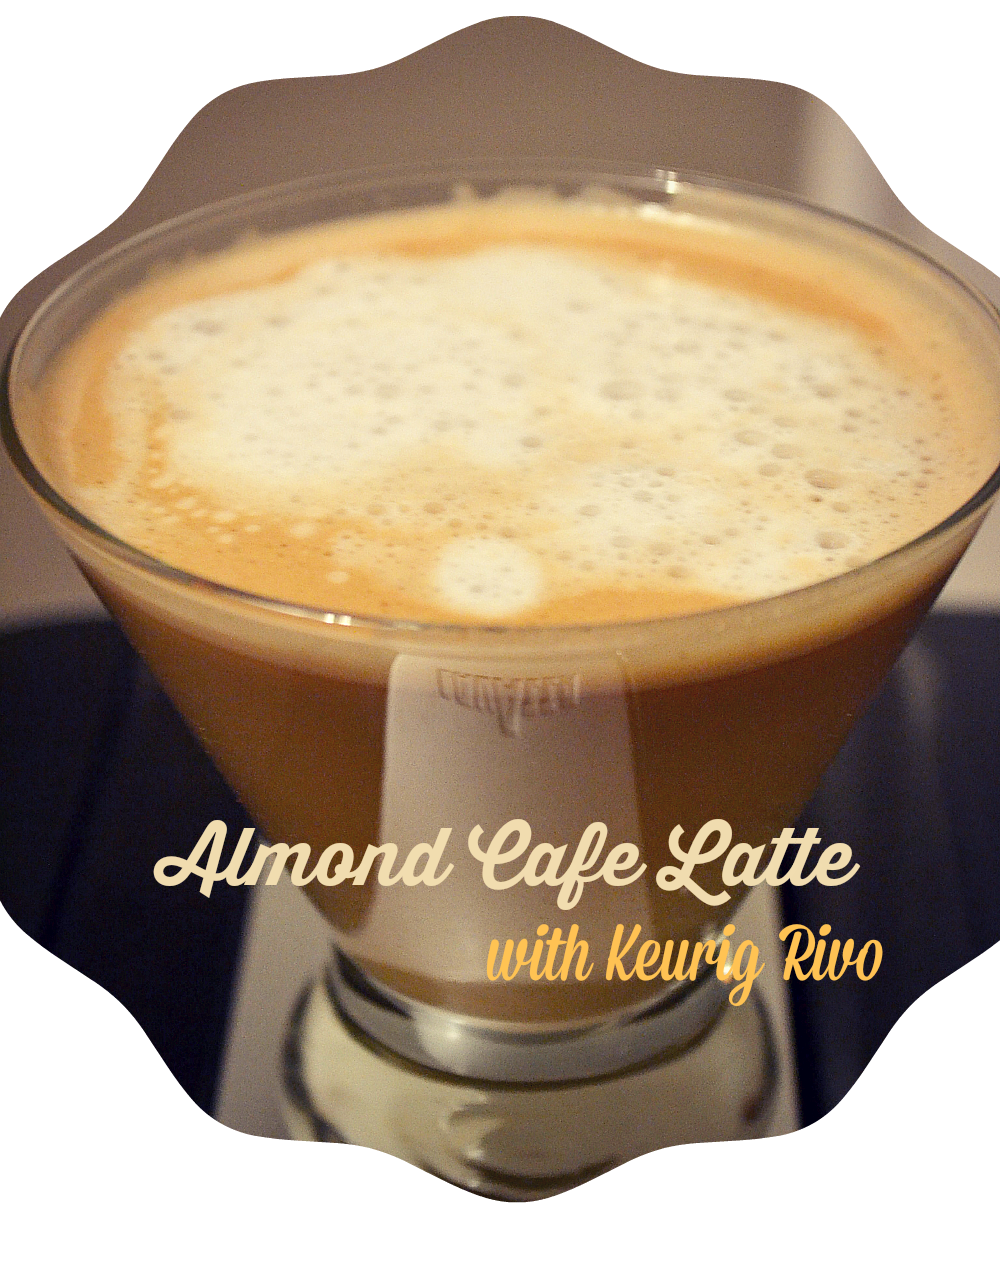 http://1.bp.blogspot.com/-6uju_LVcz_0/U3z5lBJsEZI/AAAAAAAARVI/lSWGIrSjgmM/s1600/Almond+Cafe+Latte.png